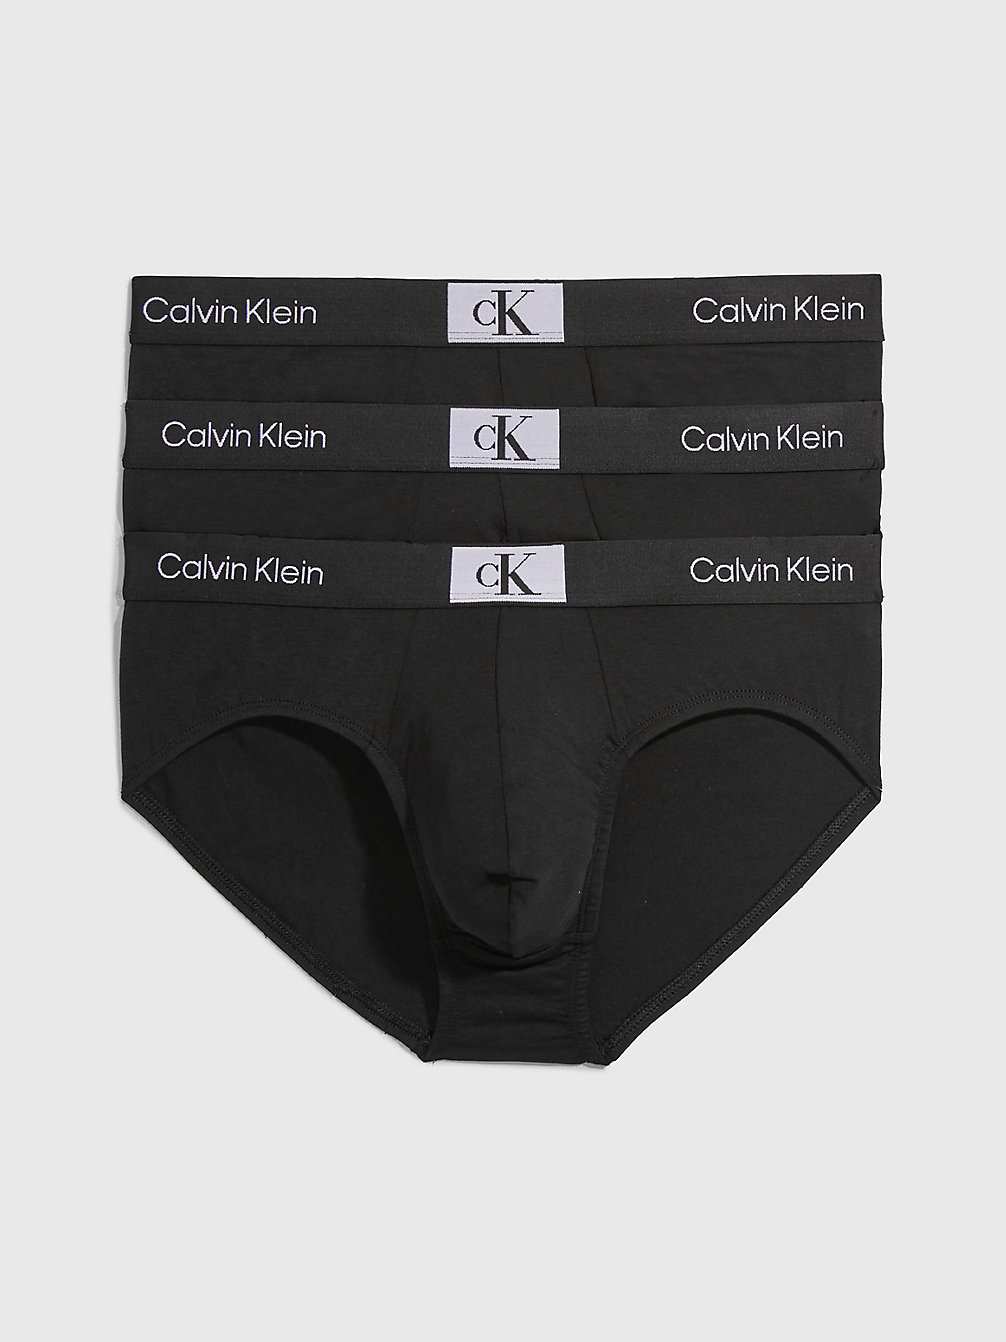 BLACK/ BLACK / BLACK 3 Pack Briefs - Ck96 undefined men Calvin Klein